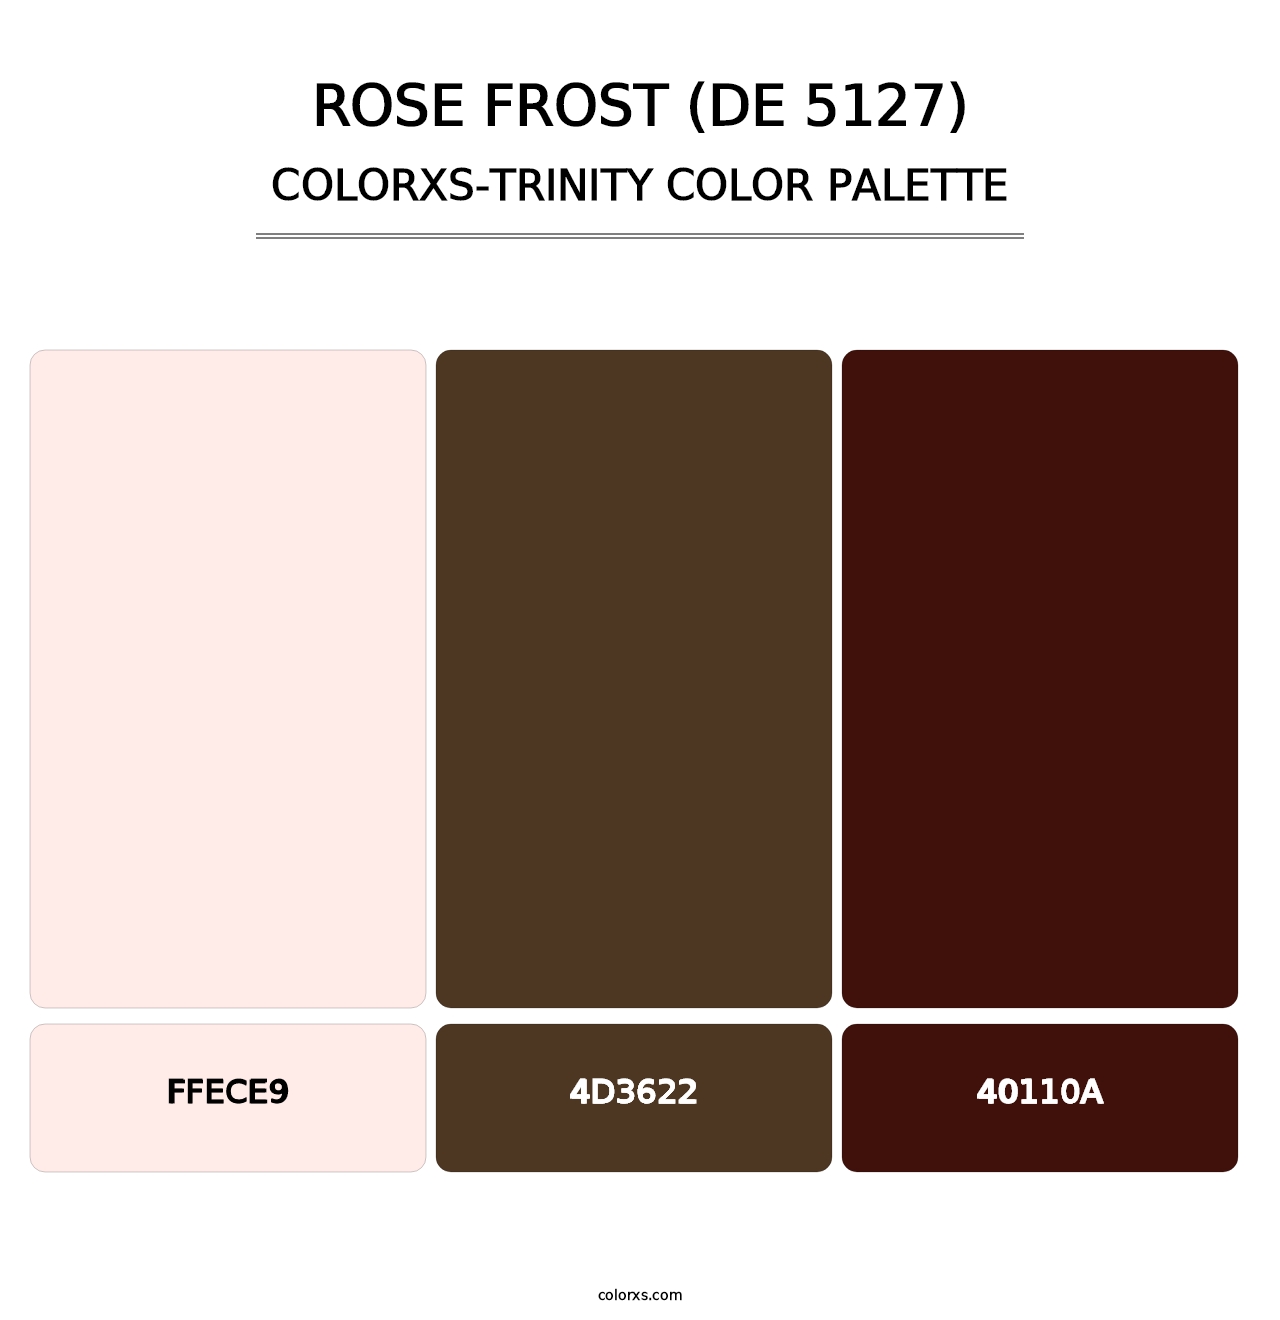 Rose Frost (DE 5127) - Colorxs Trinity Palette